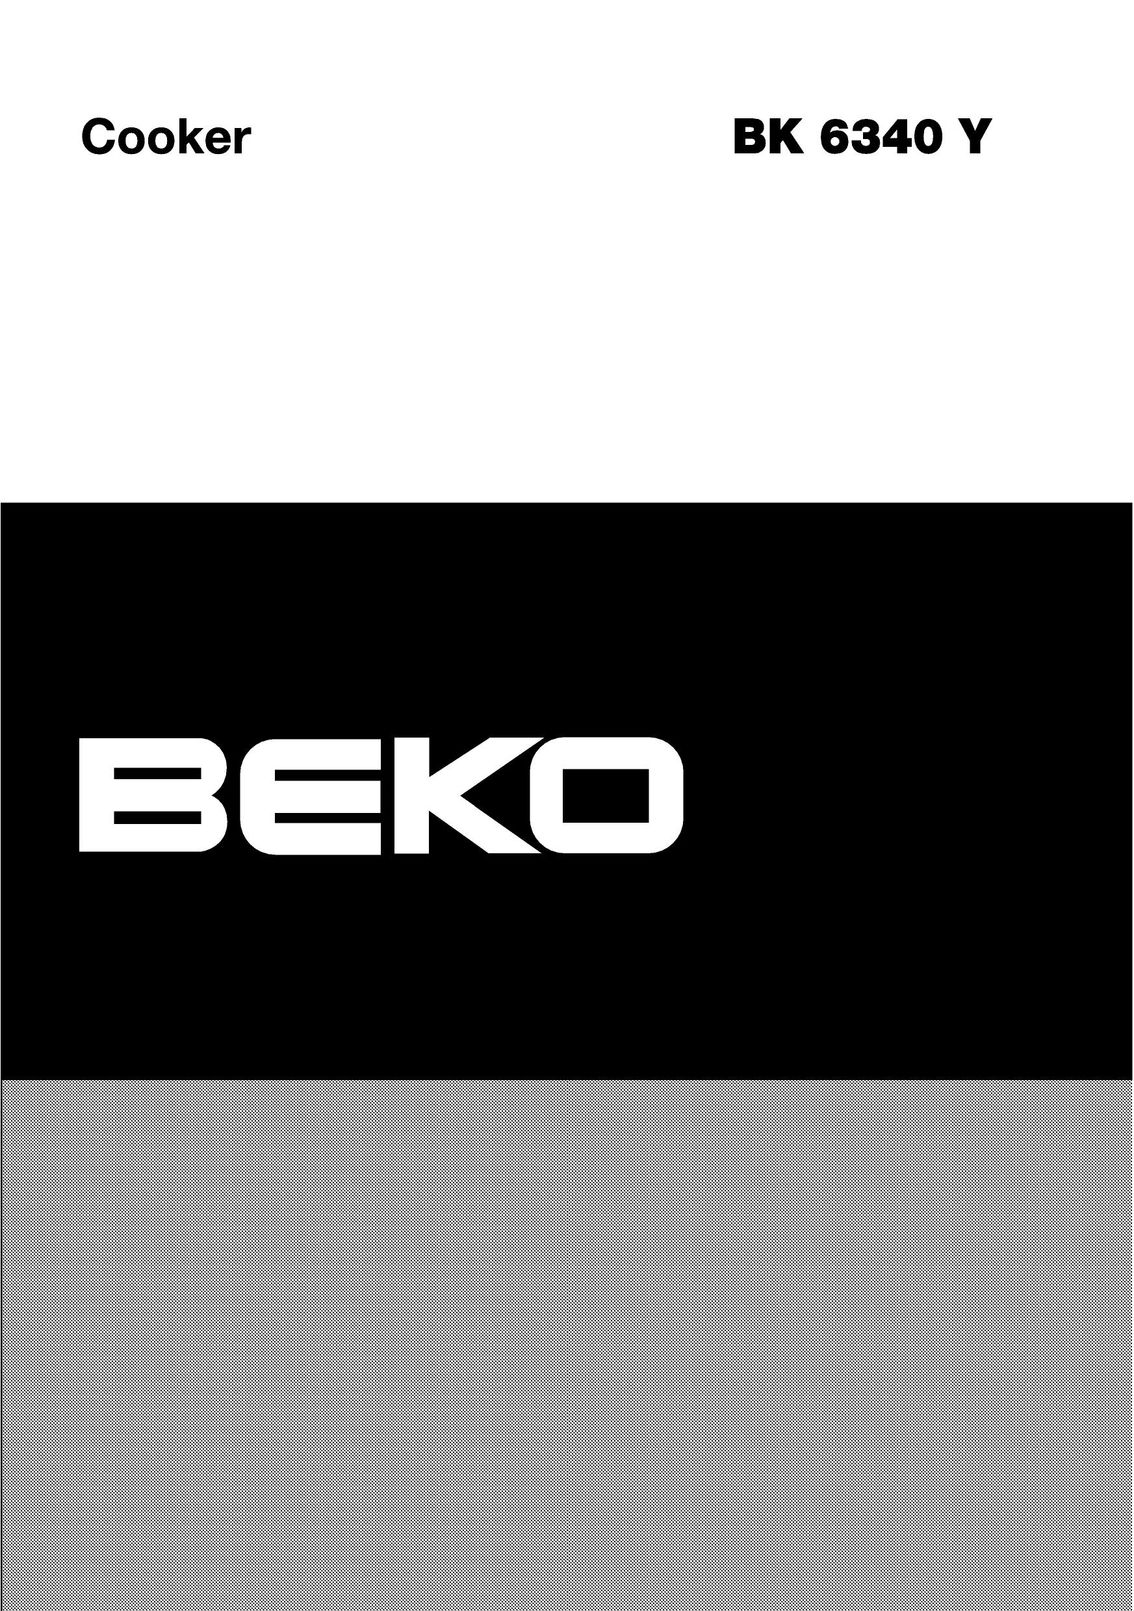 Beko BK 6340 Y Cooktop User Manual